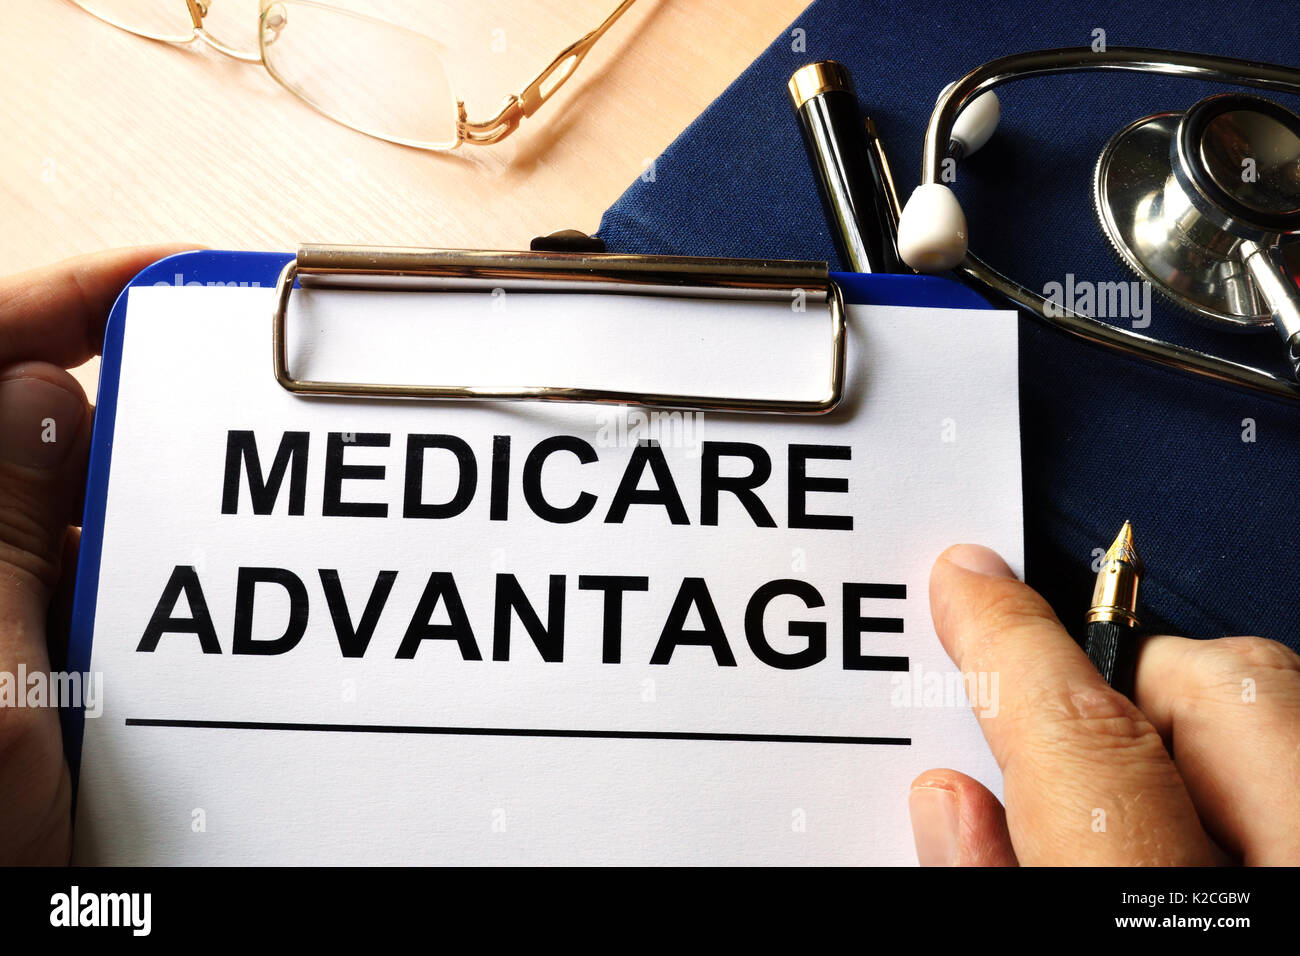 Medicare advantage in a clipboard. Health care insurance concept. Stock Photo